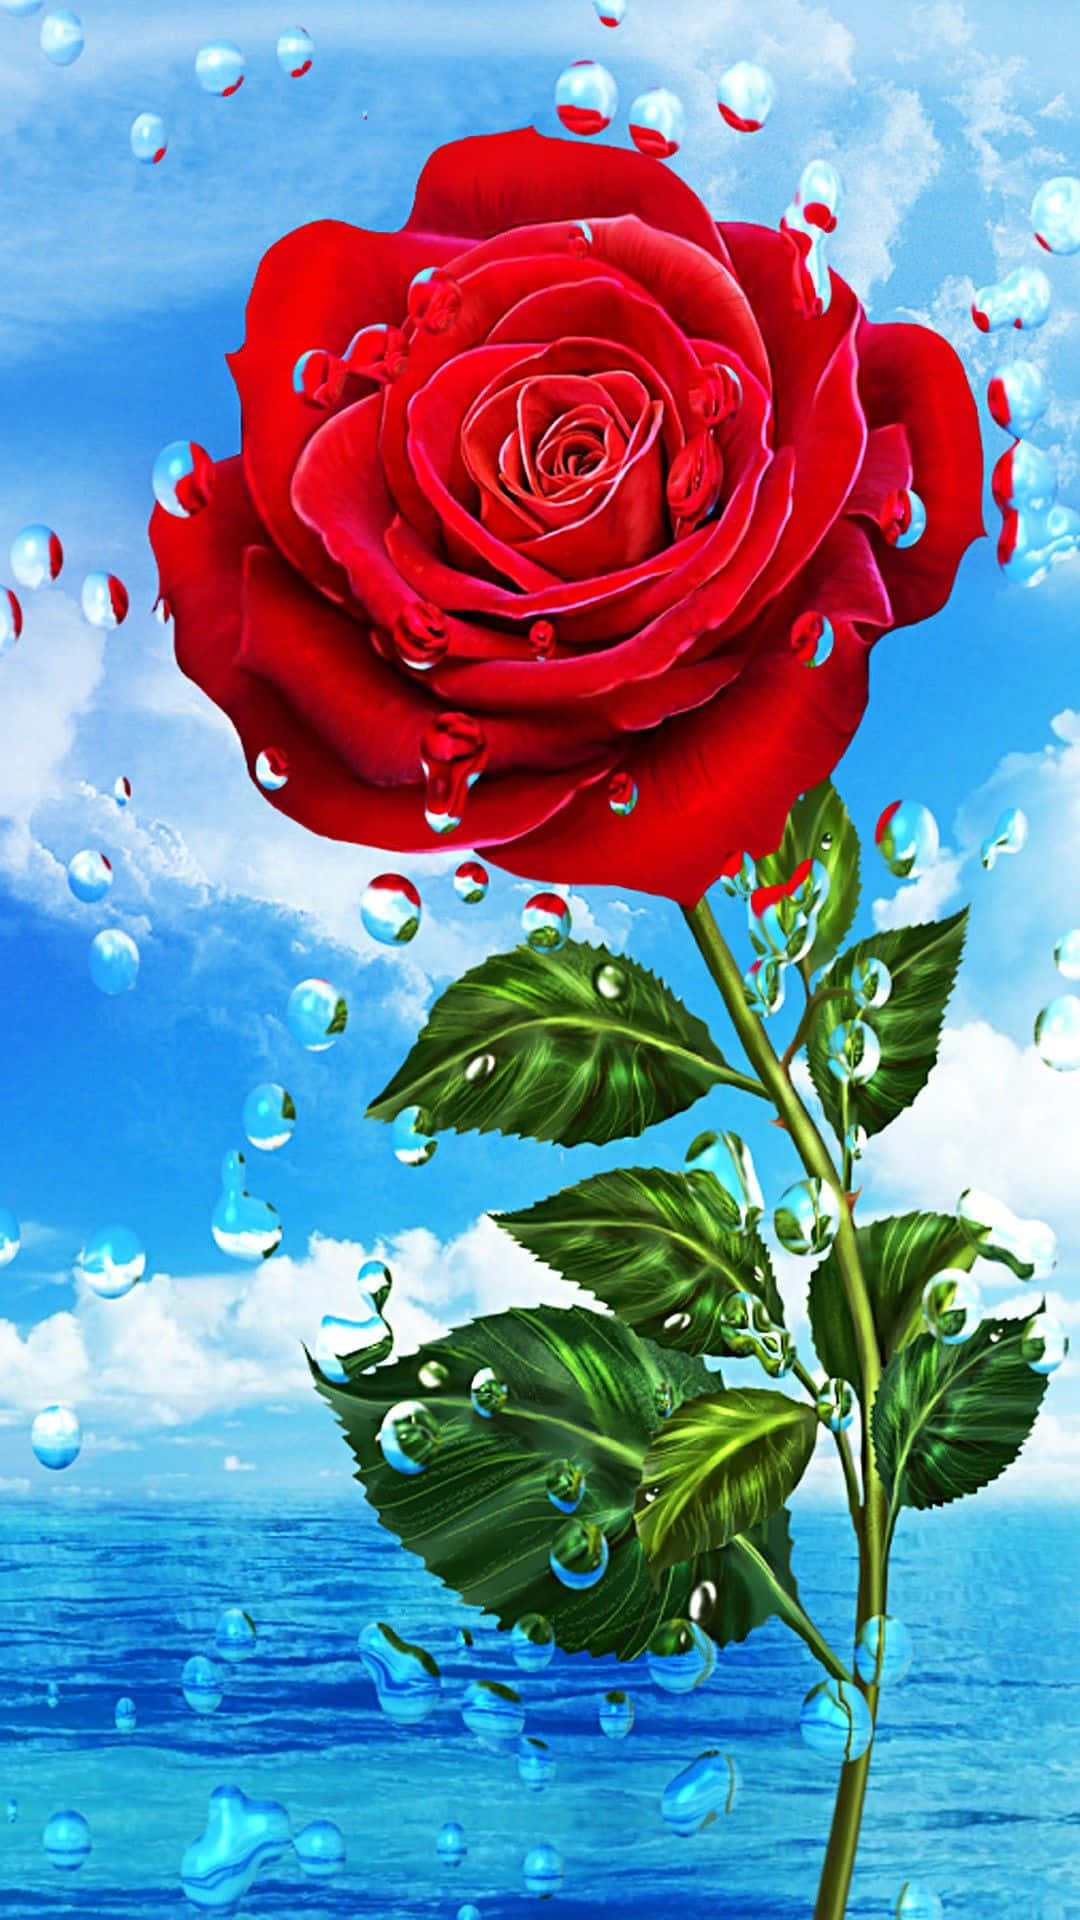 Download Rose Mobile Wallpaper 